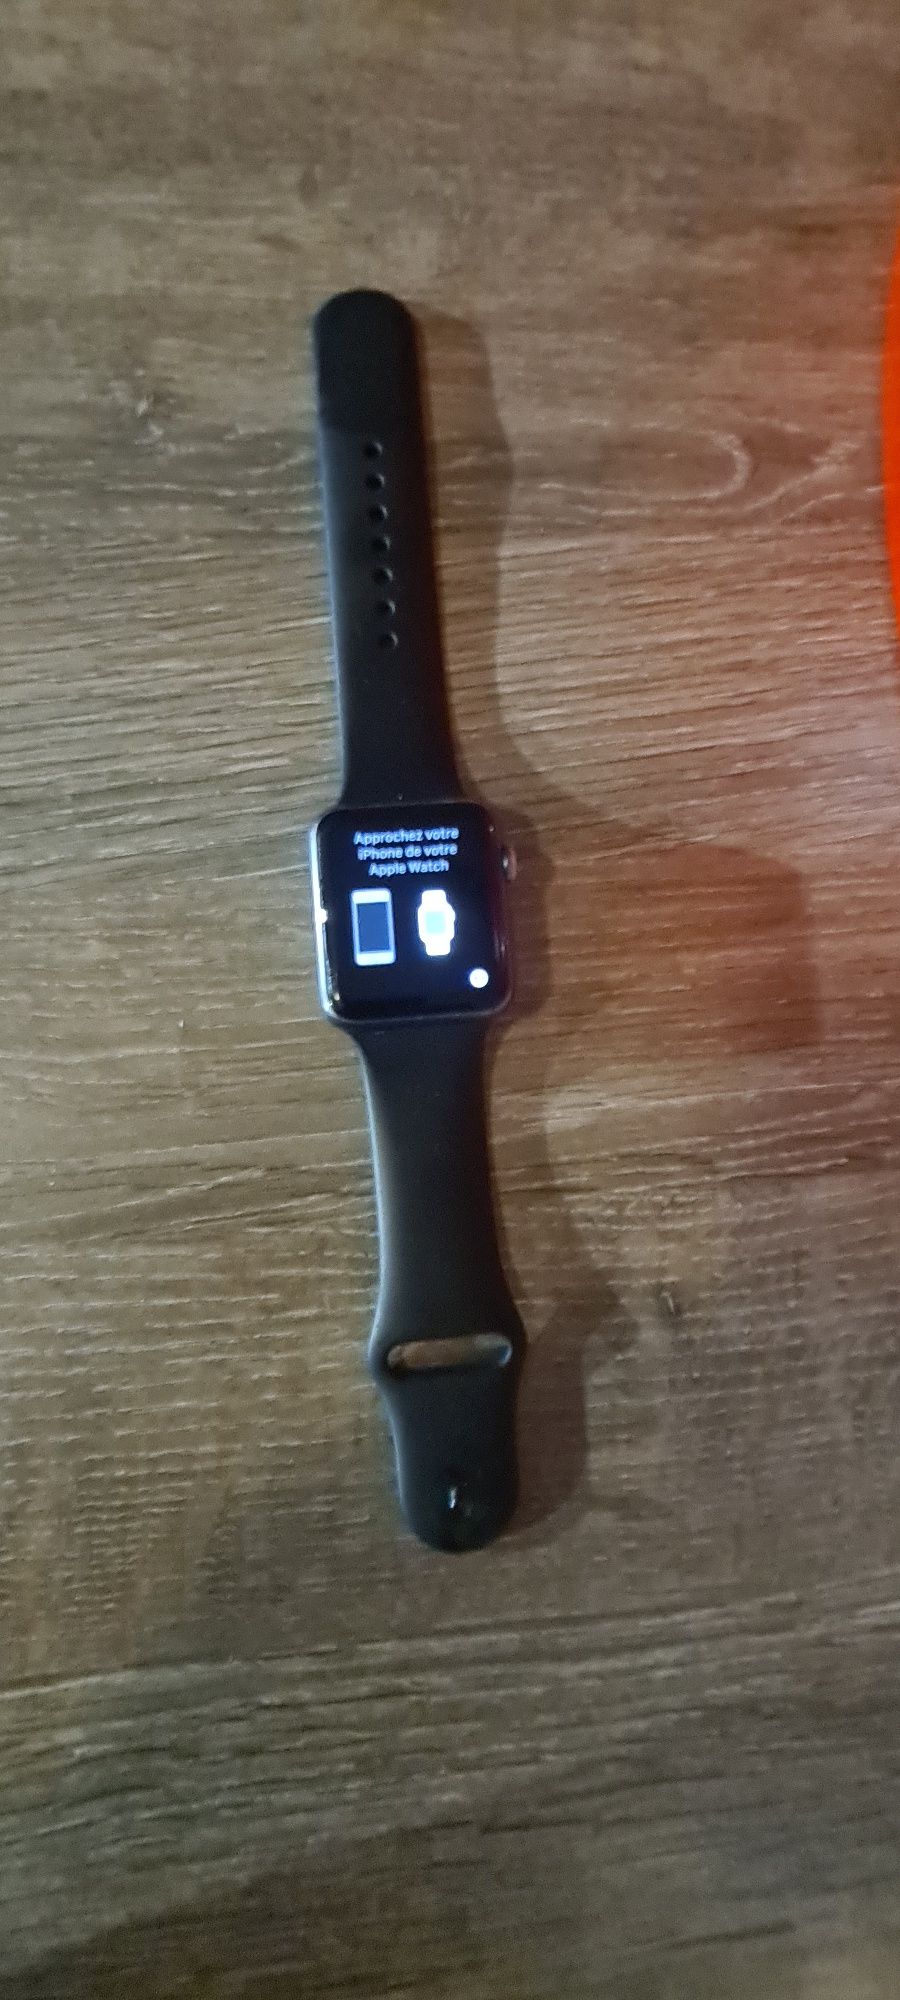 Apple watch 7000 gen1